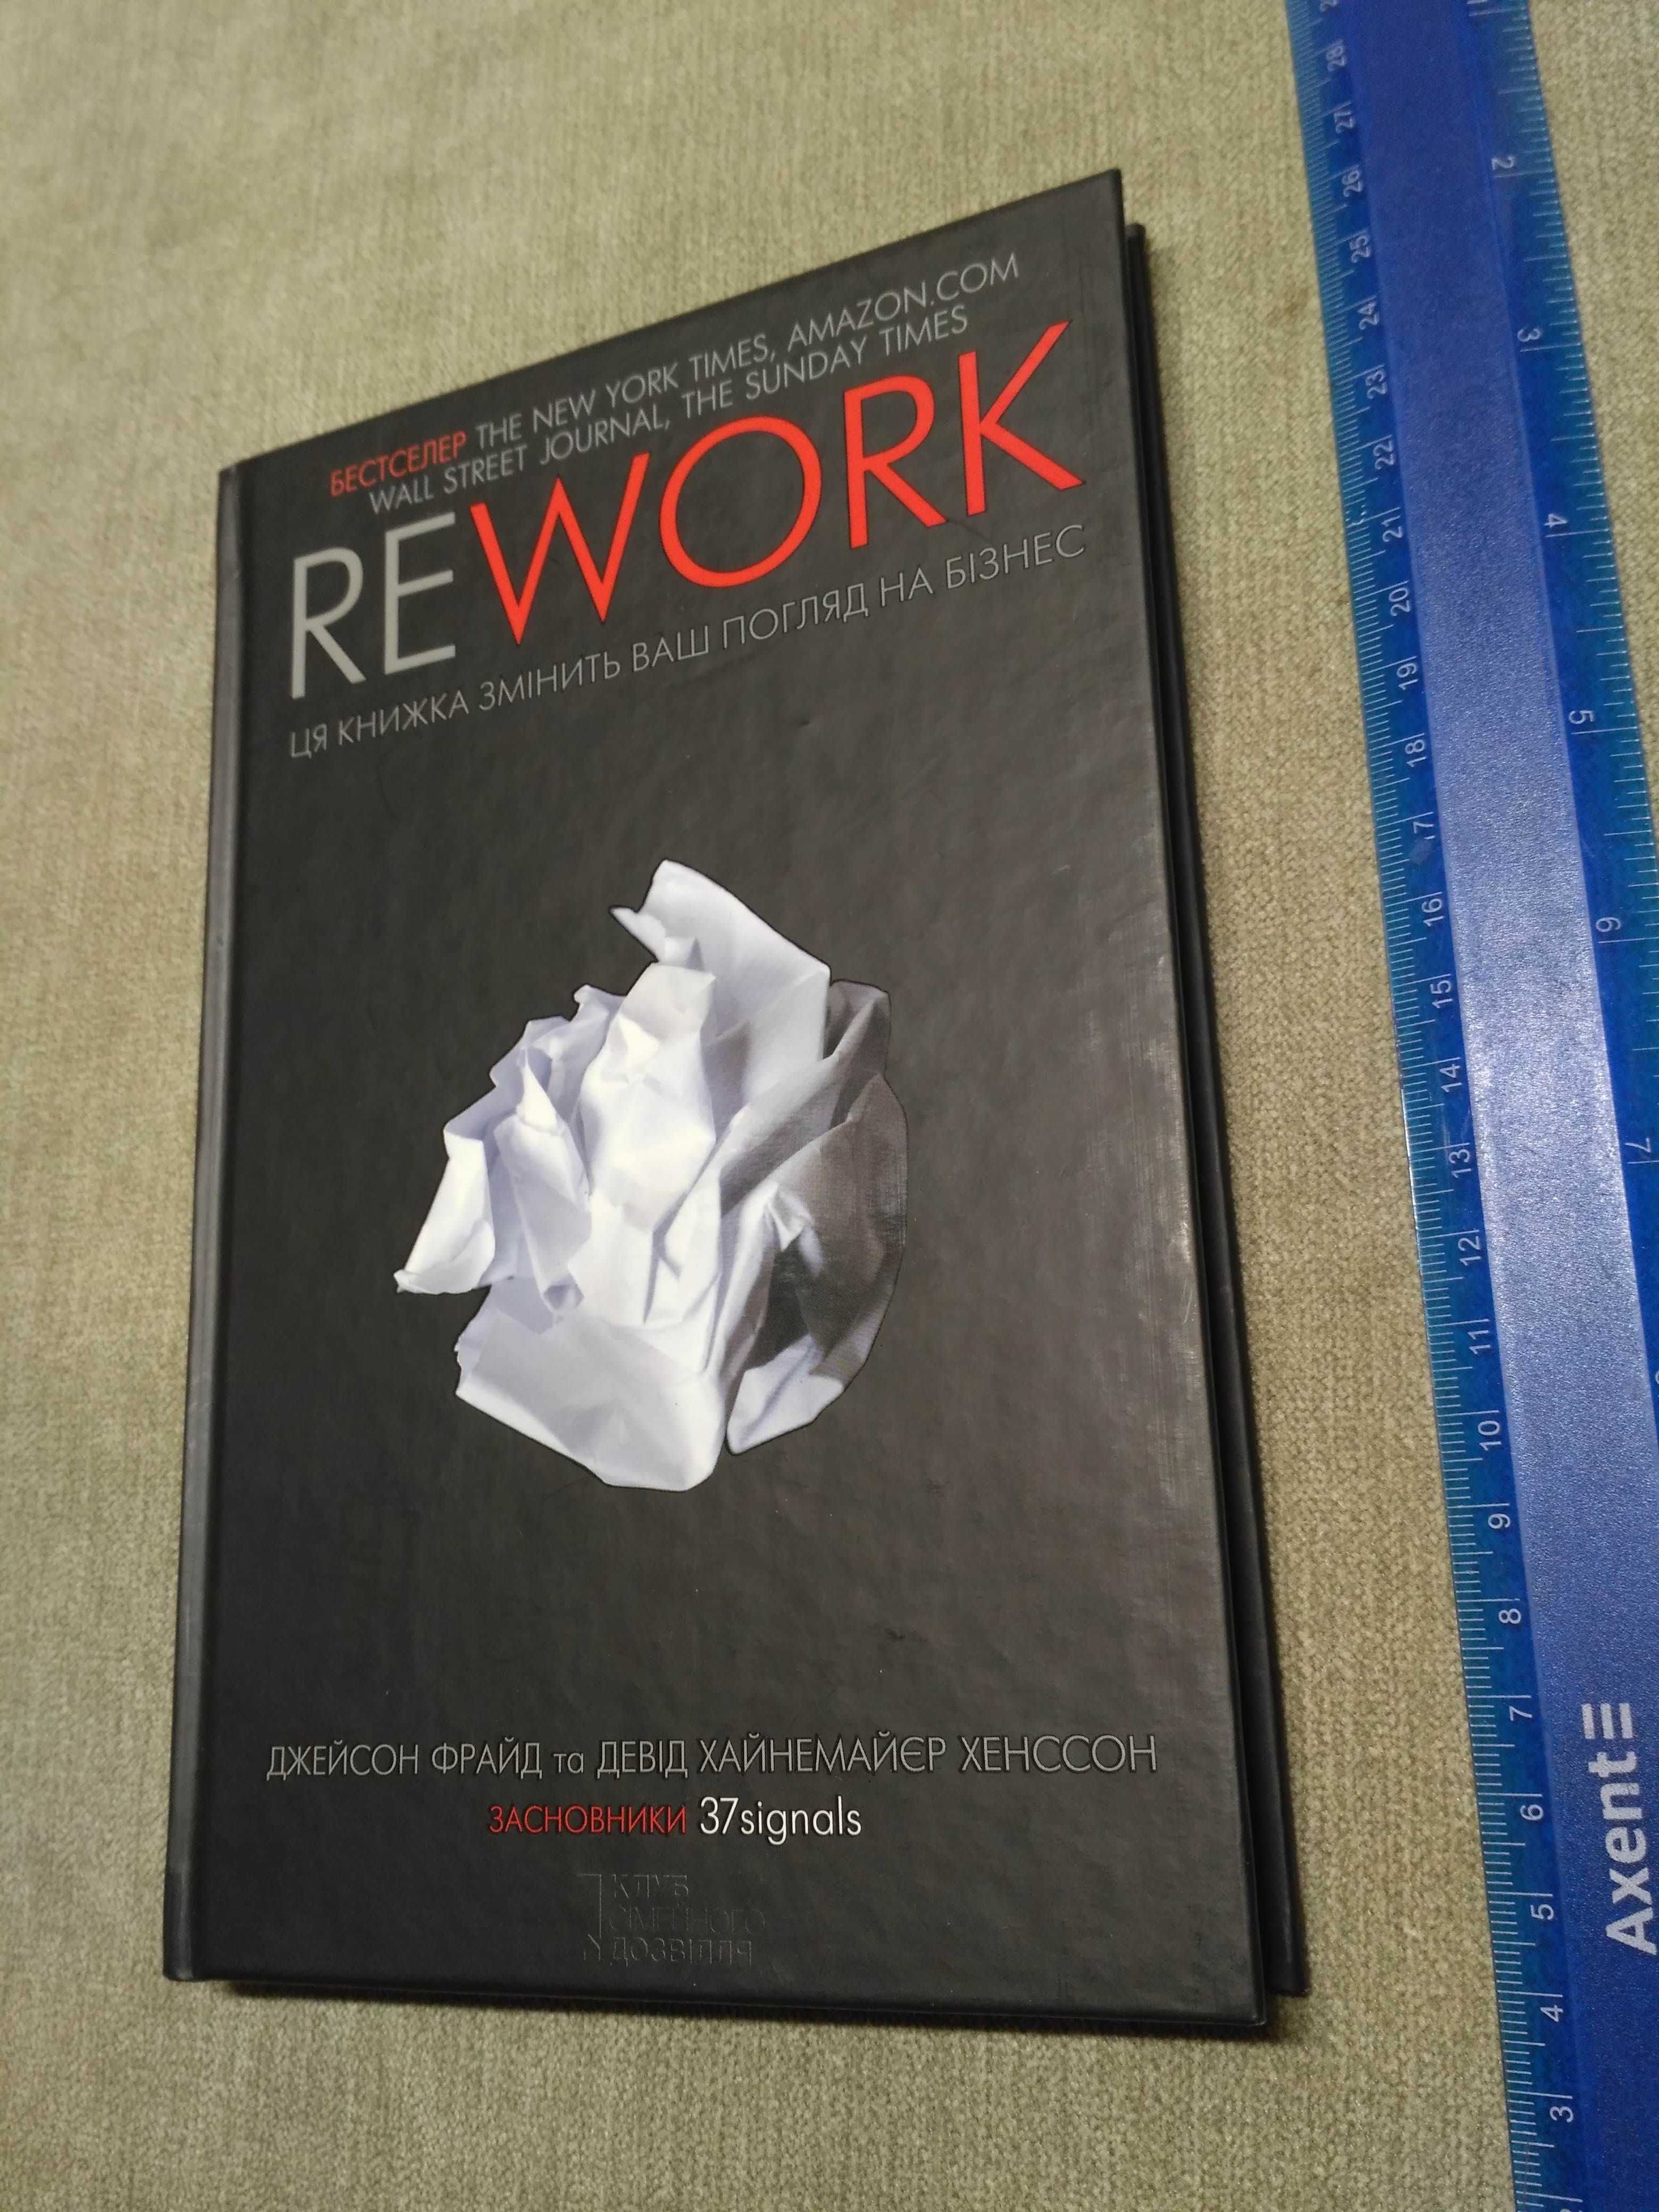 REWORK Ця книжка змінить ваш погляд на бізнес